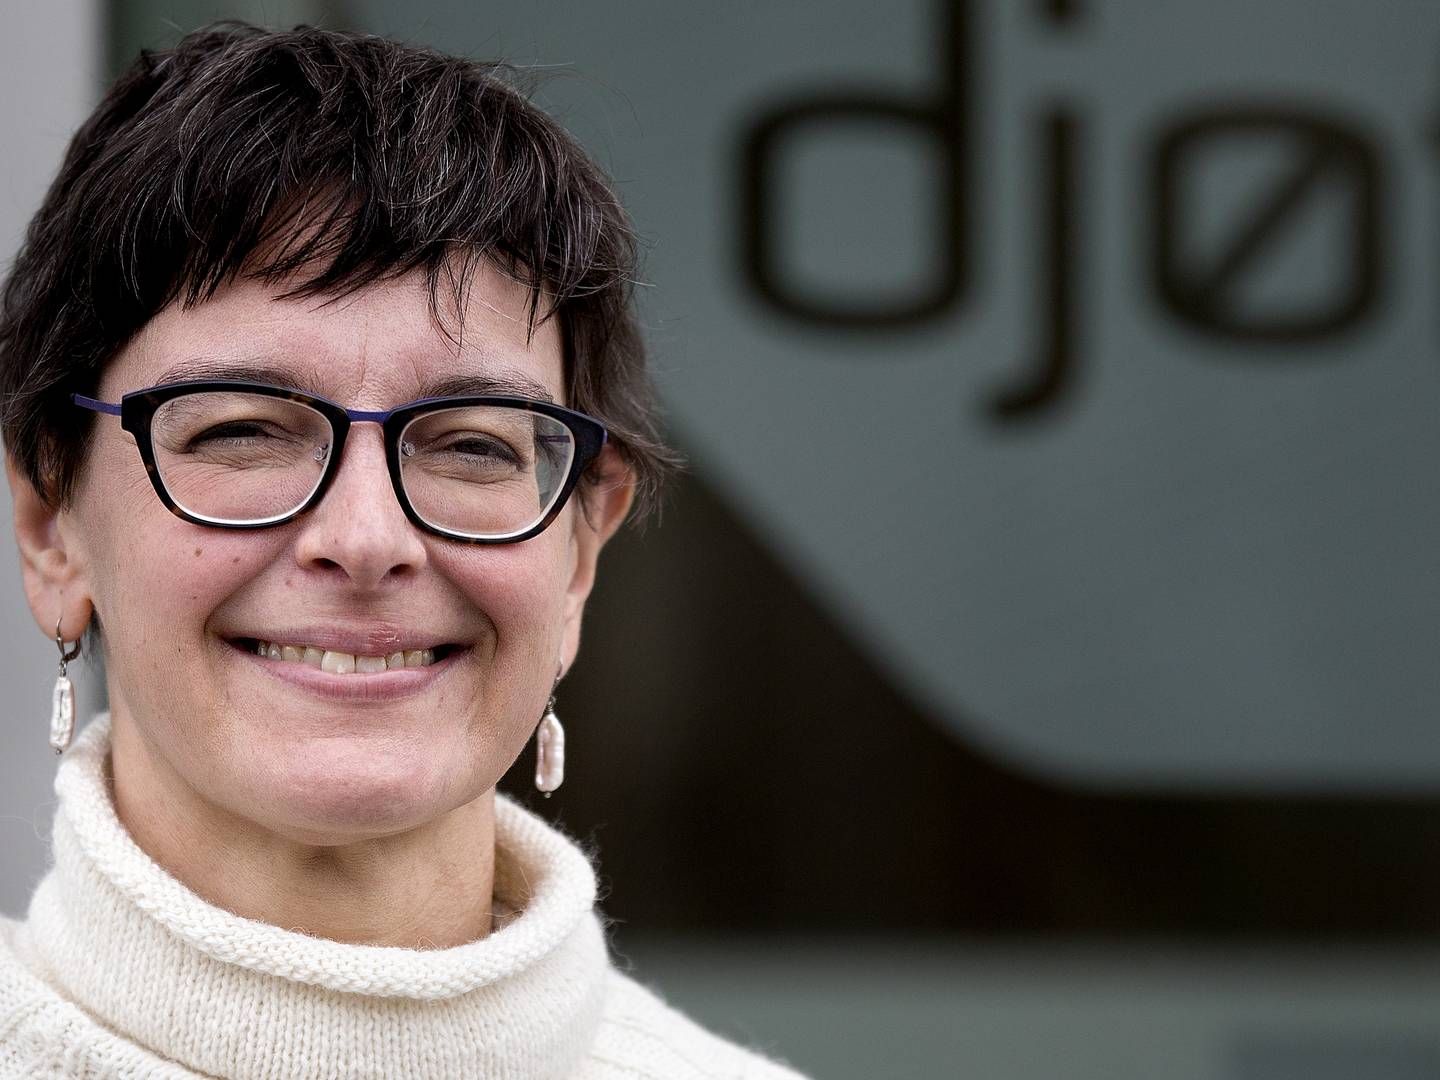 Sara Vergo er ny formand for Djøf. | Foto: Finn Frandsen